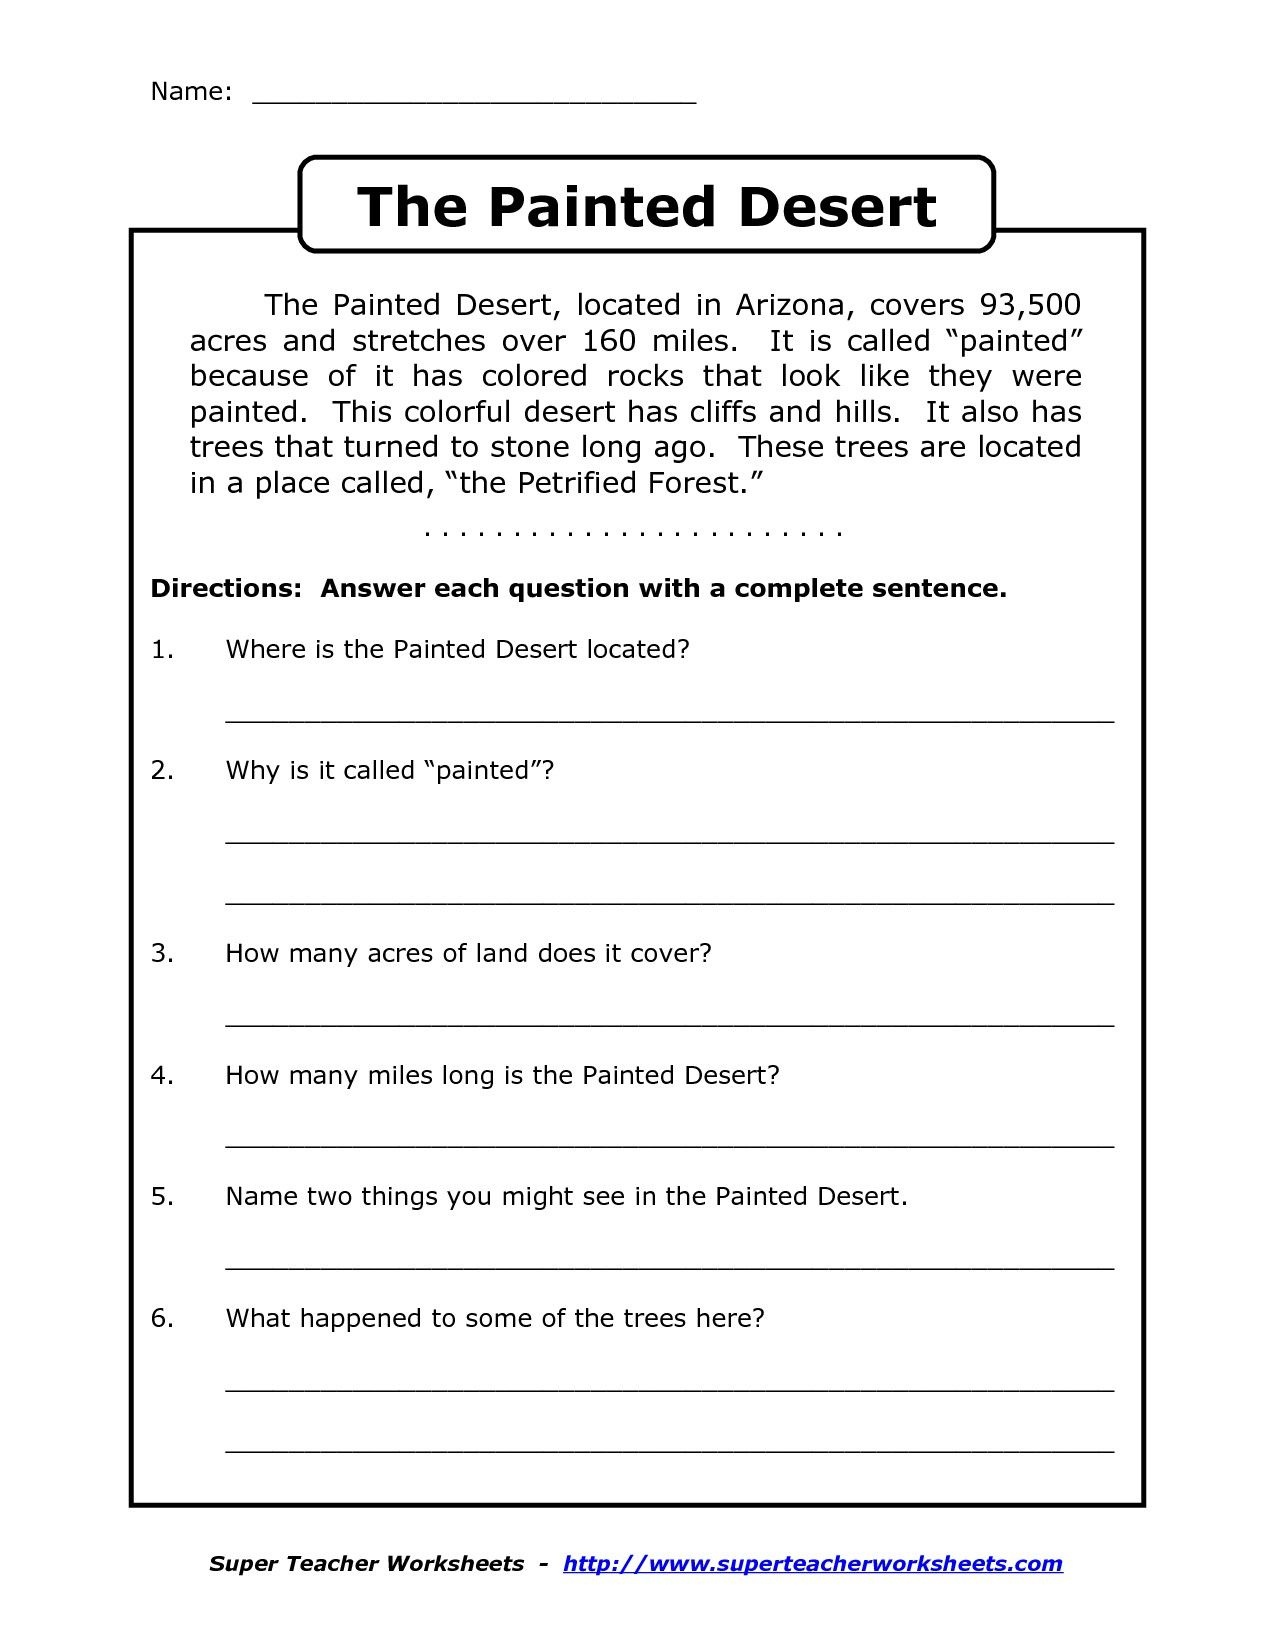 Image Result For Free Printable Worksheets For Grade 4 Comprehension - Free Printable 3Rd Grade Reading Worksheets